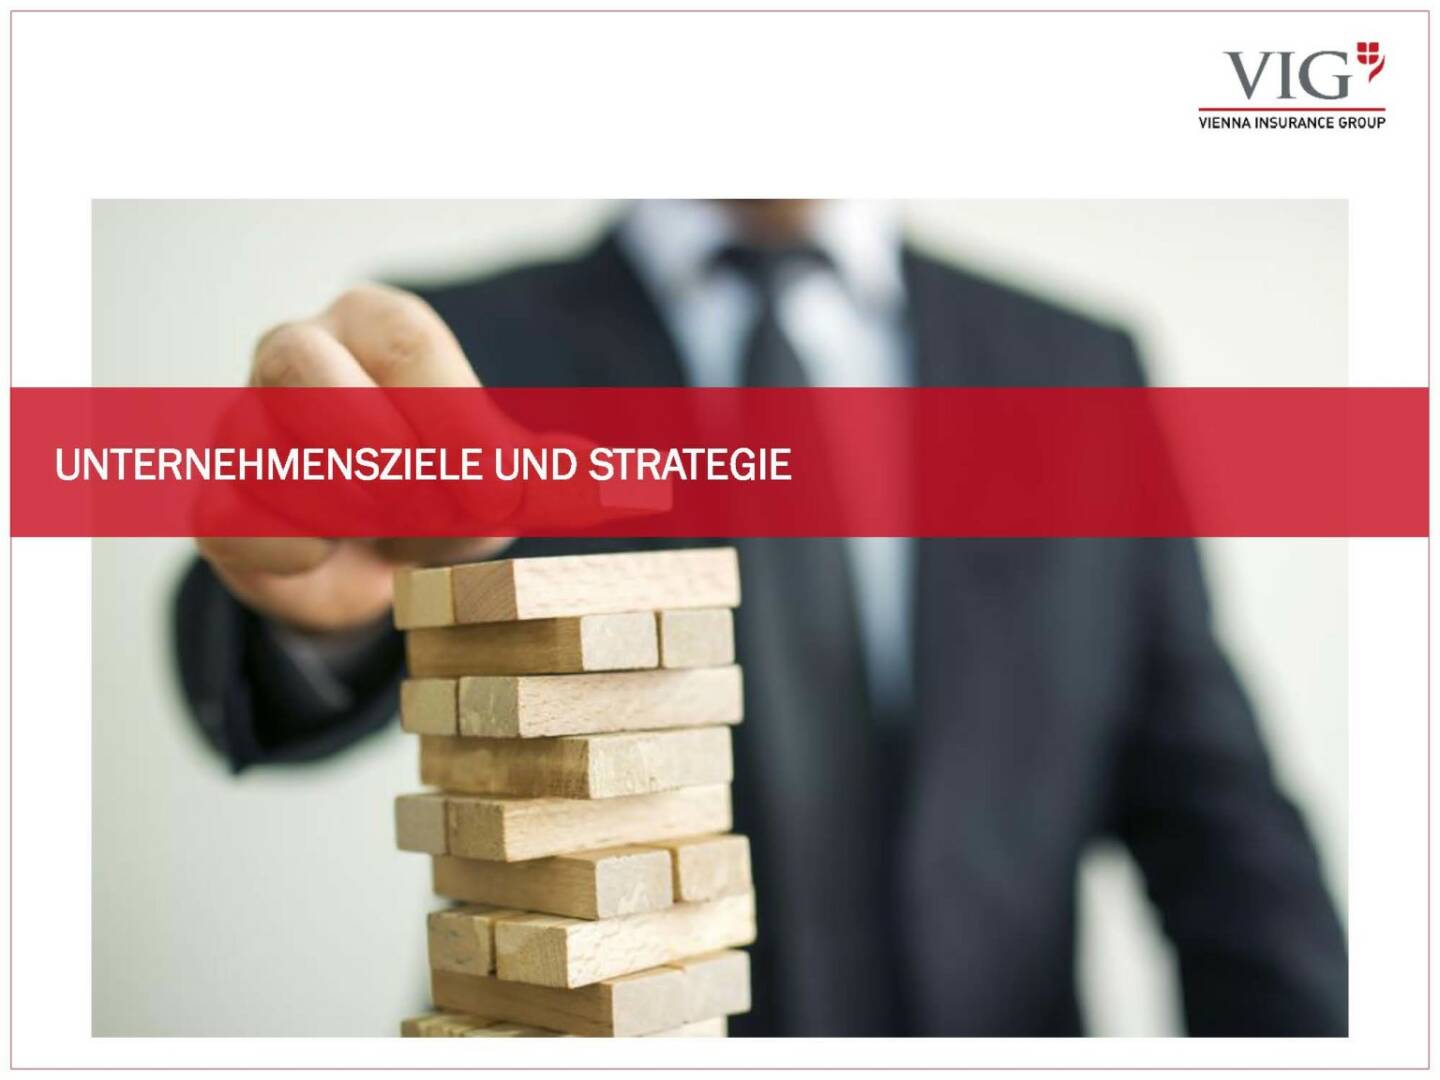 Vienna Insurance Group - Unternehmensziele und Strategie VIG